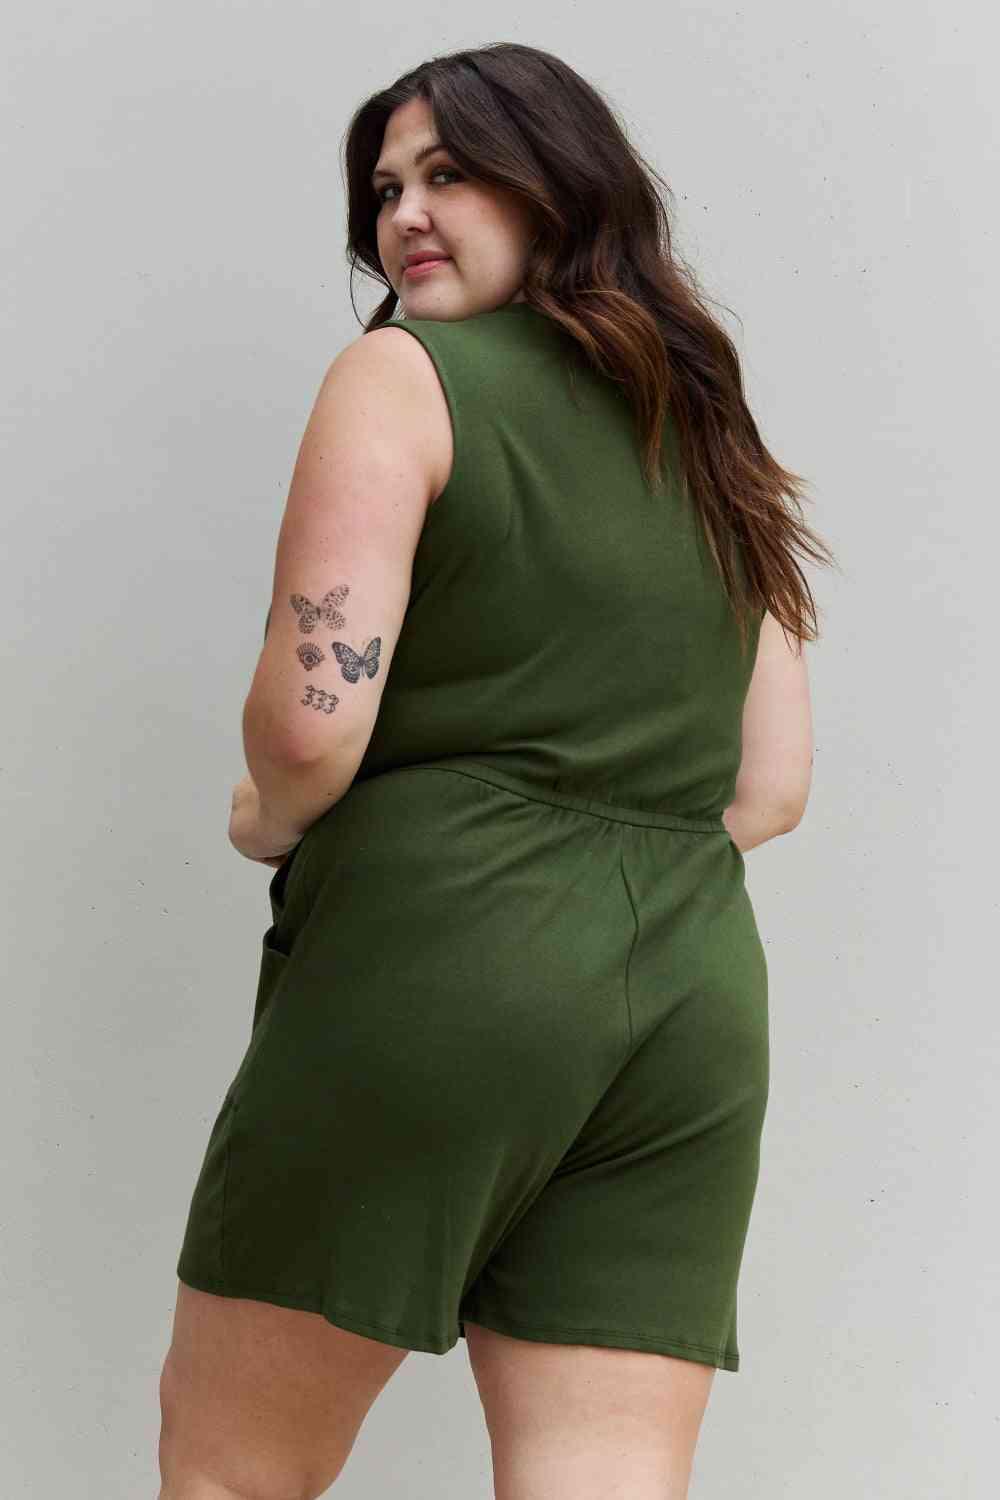 Zenana Forever Yours Full Size V-Neck Sleeveless Romper in Army Green - Closet of Ren